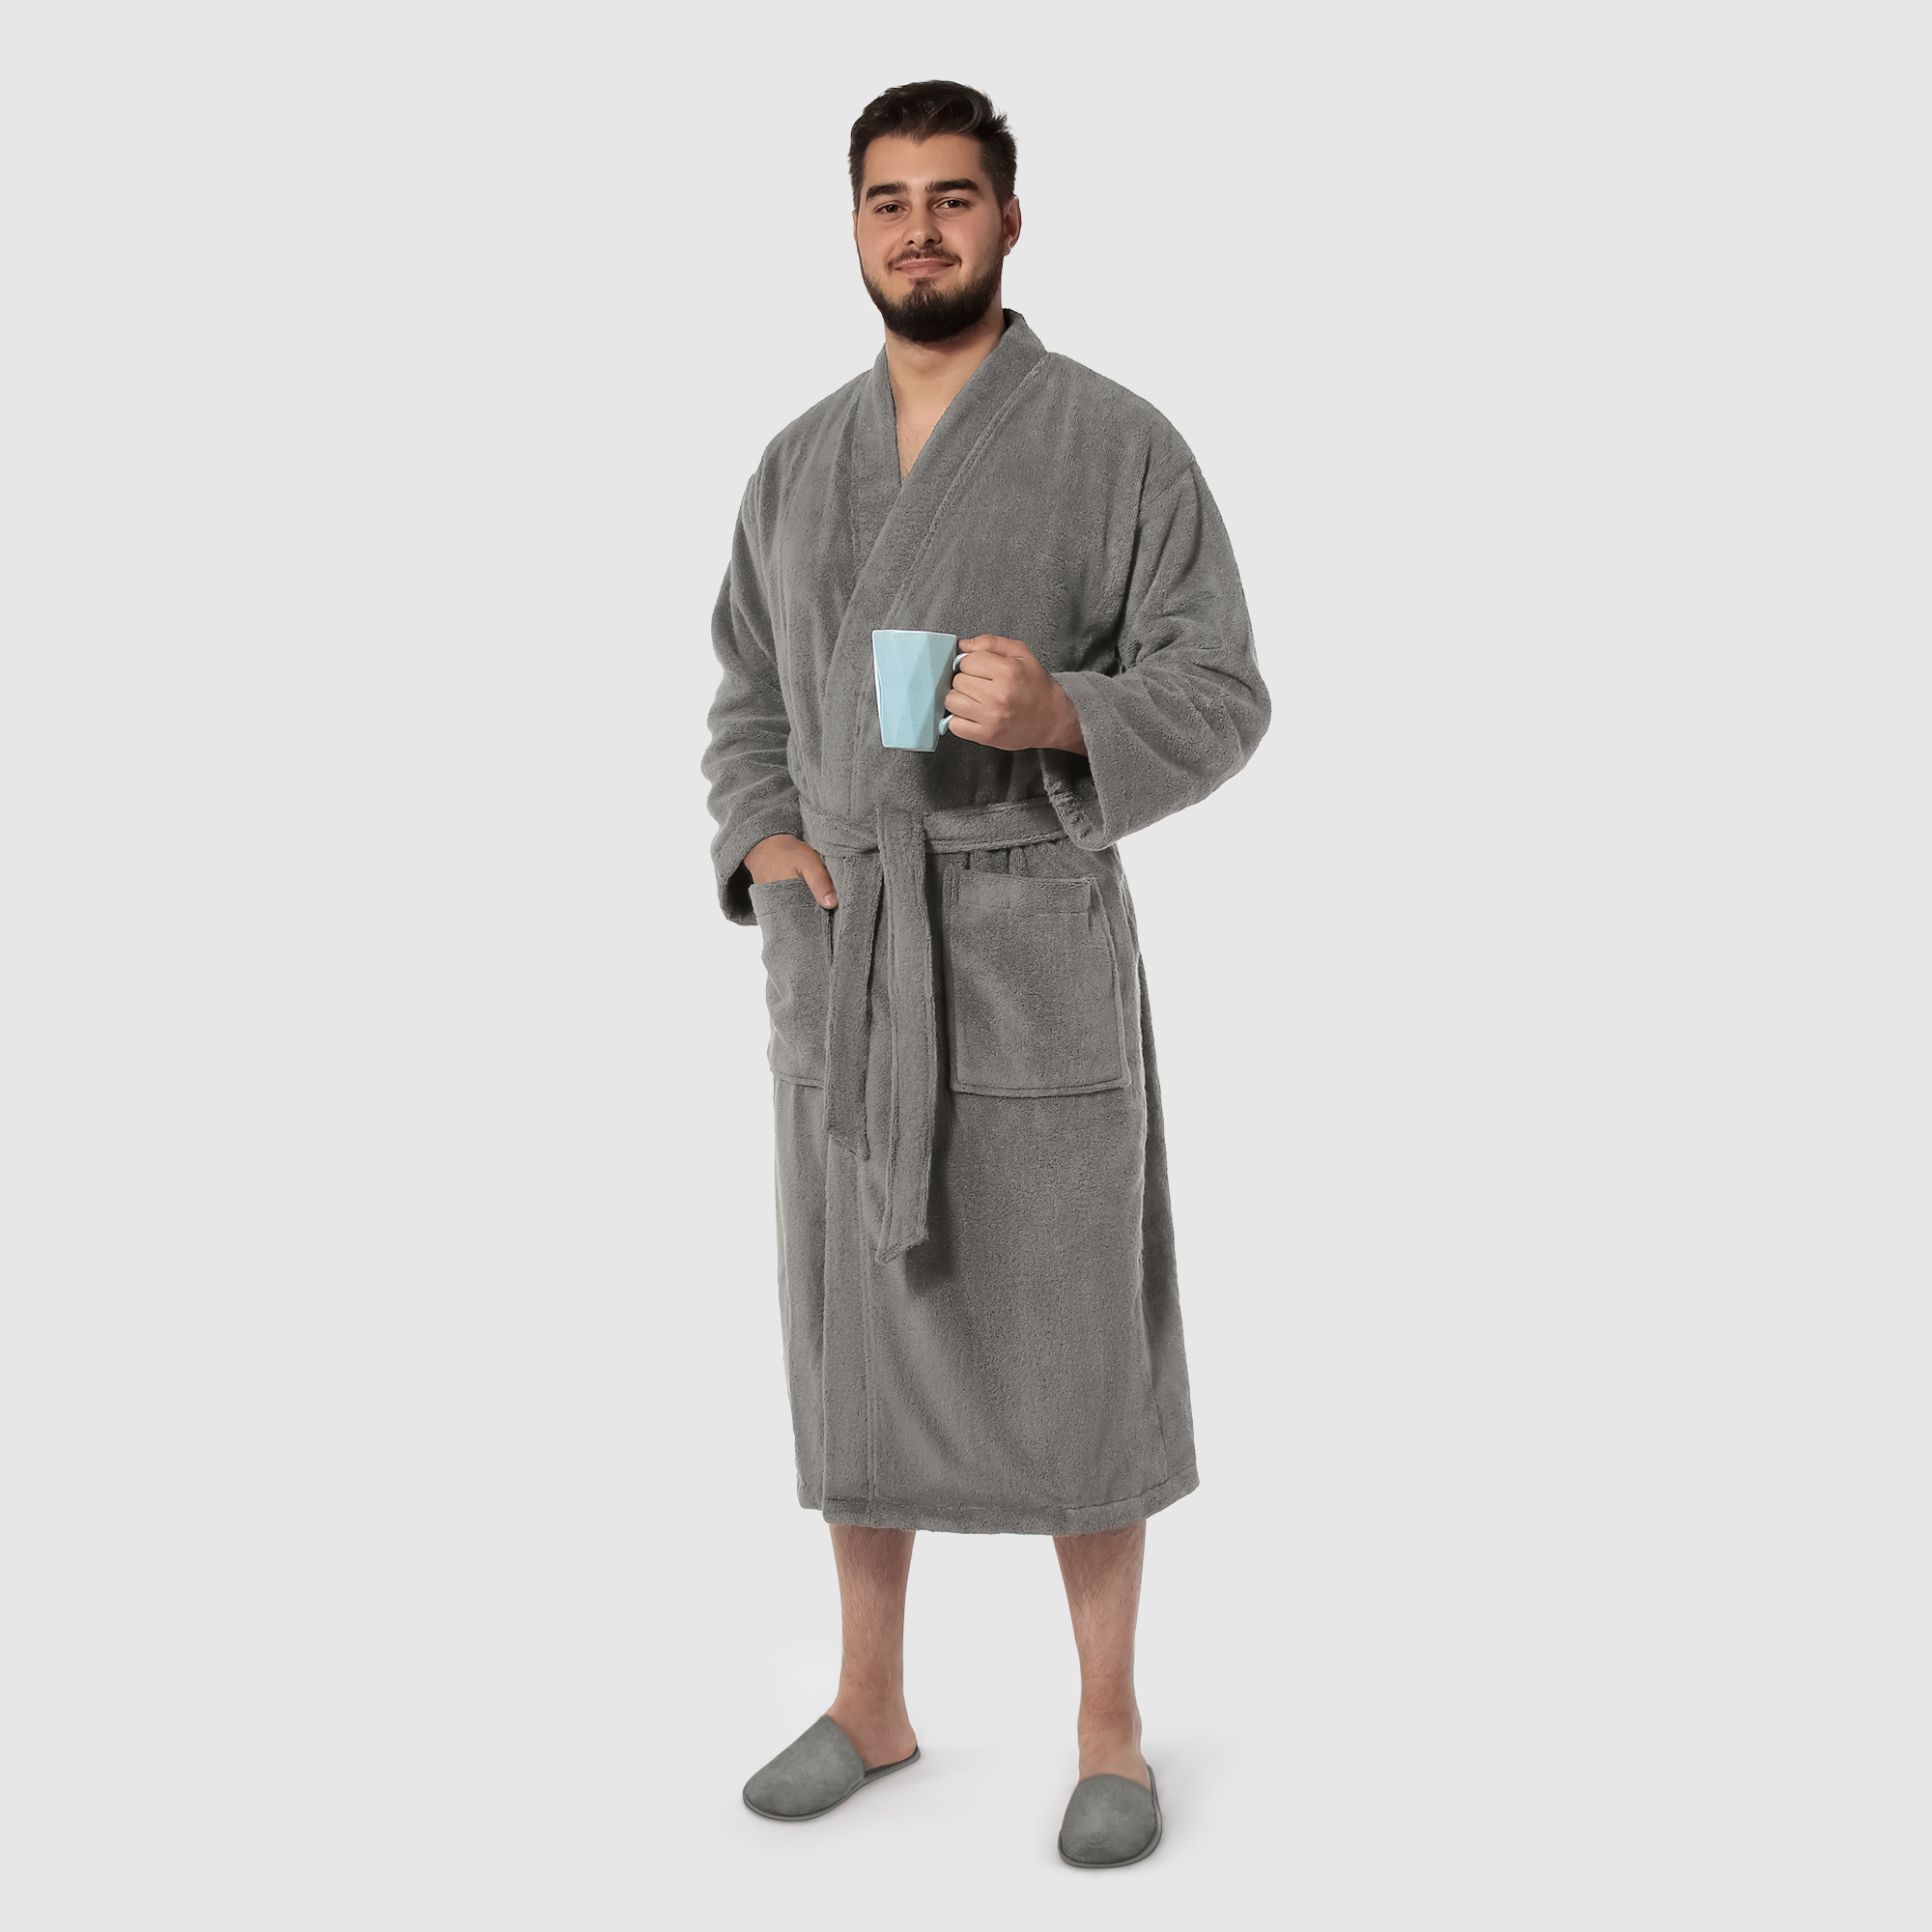 Мужской халат Maisonette Parla светло-серый L халат мужской asil sauna brown xxl вафельный с капюшоном